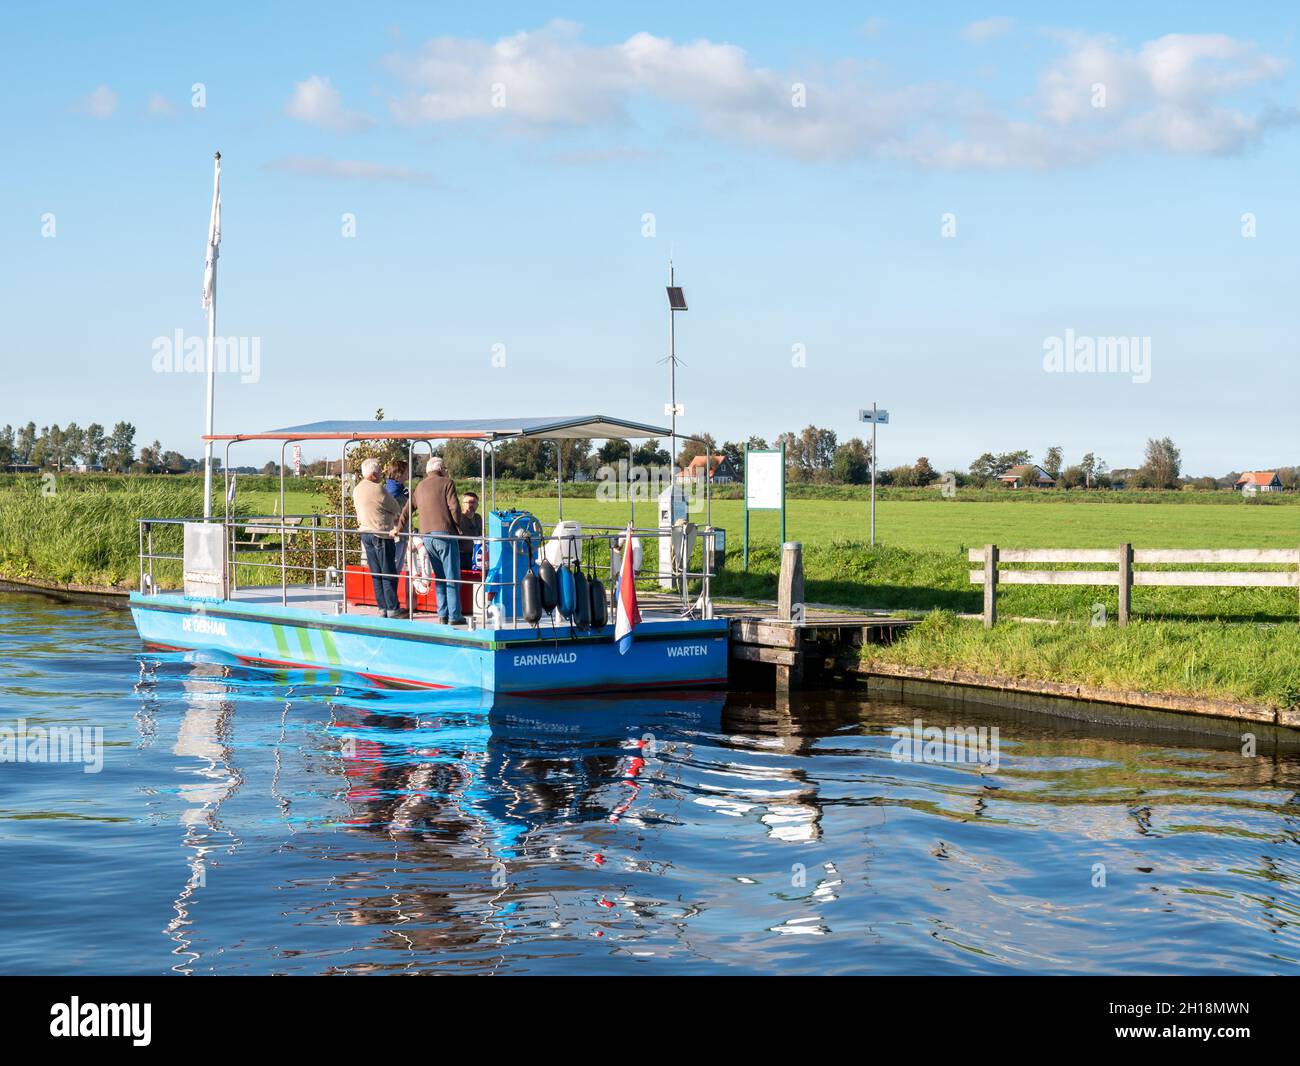 Ferry de pie de energía solar desde Earnewald a Warten en el parque nacional Alde Feanen, Friesland, Países Bajos Foto de stock